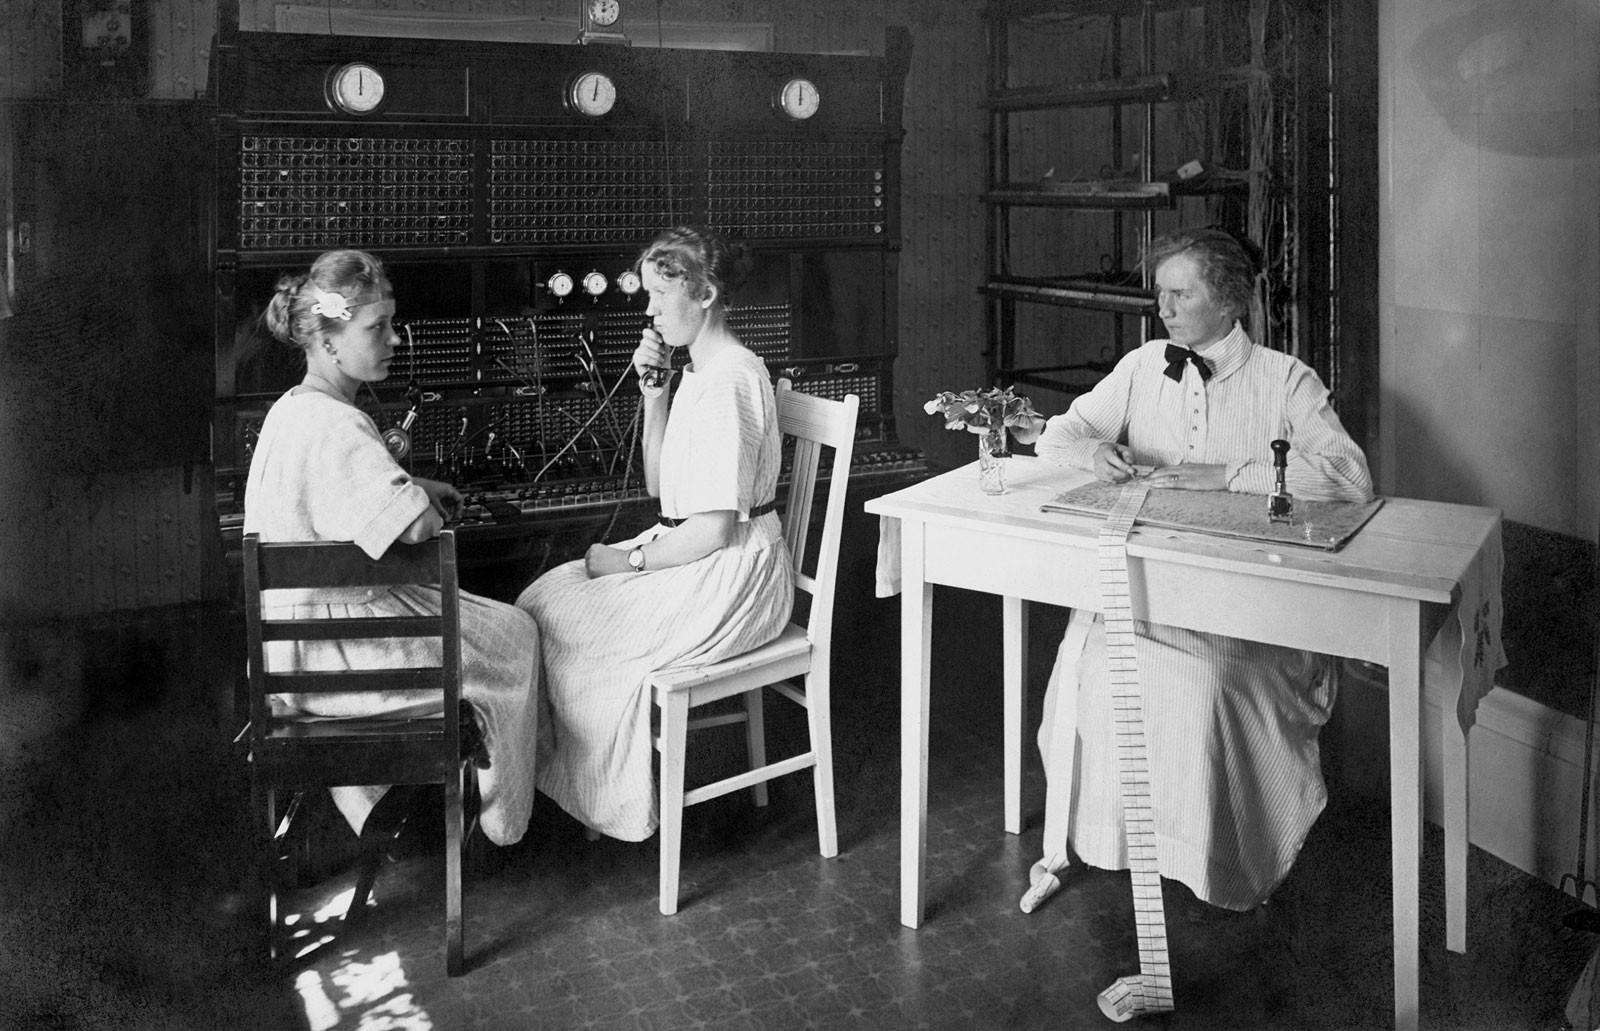 Kulosaaren puhelinkeskus 1920-luvulla. Kuva: Helsingin kaupunginmuseo